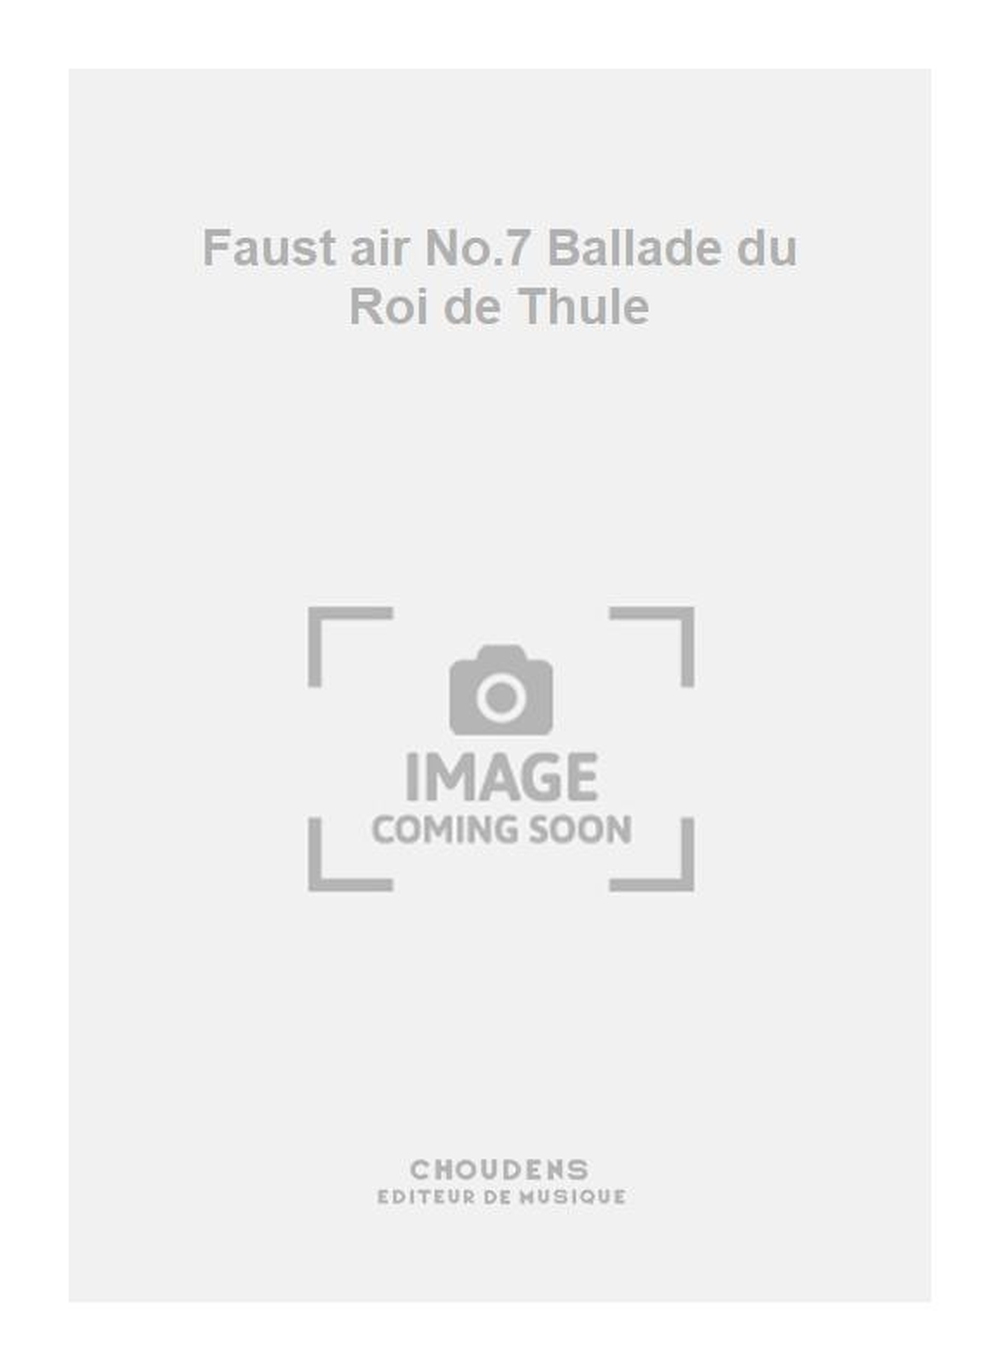 Charles Gounod: Faust air No.7 Ballade du Roi de Thule